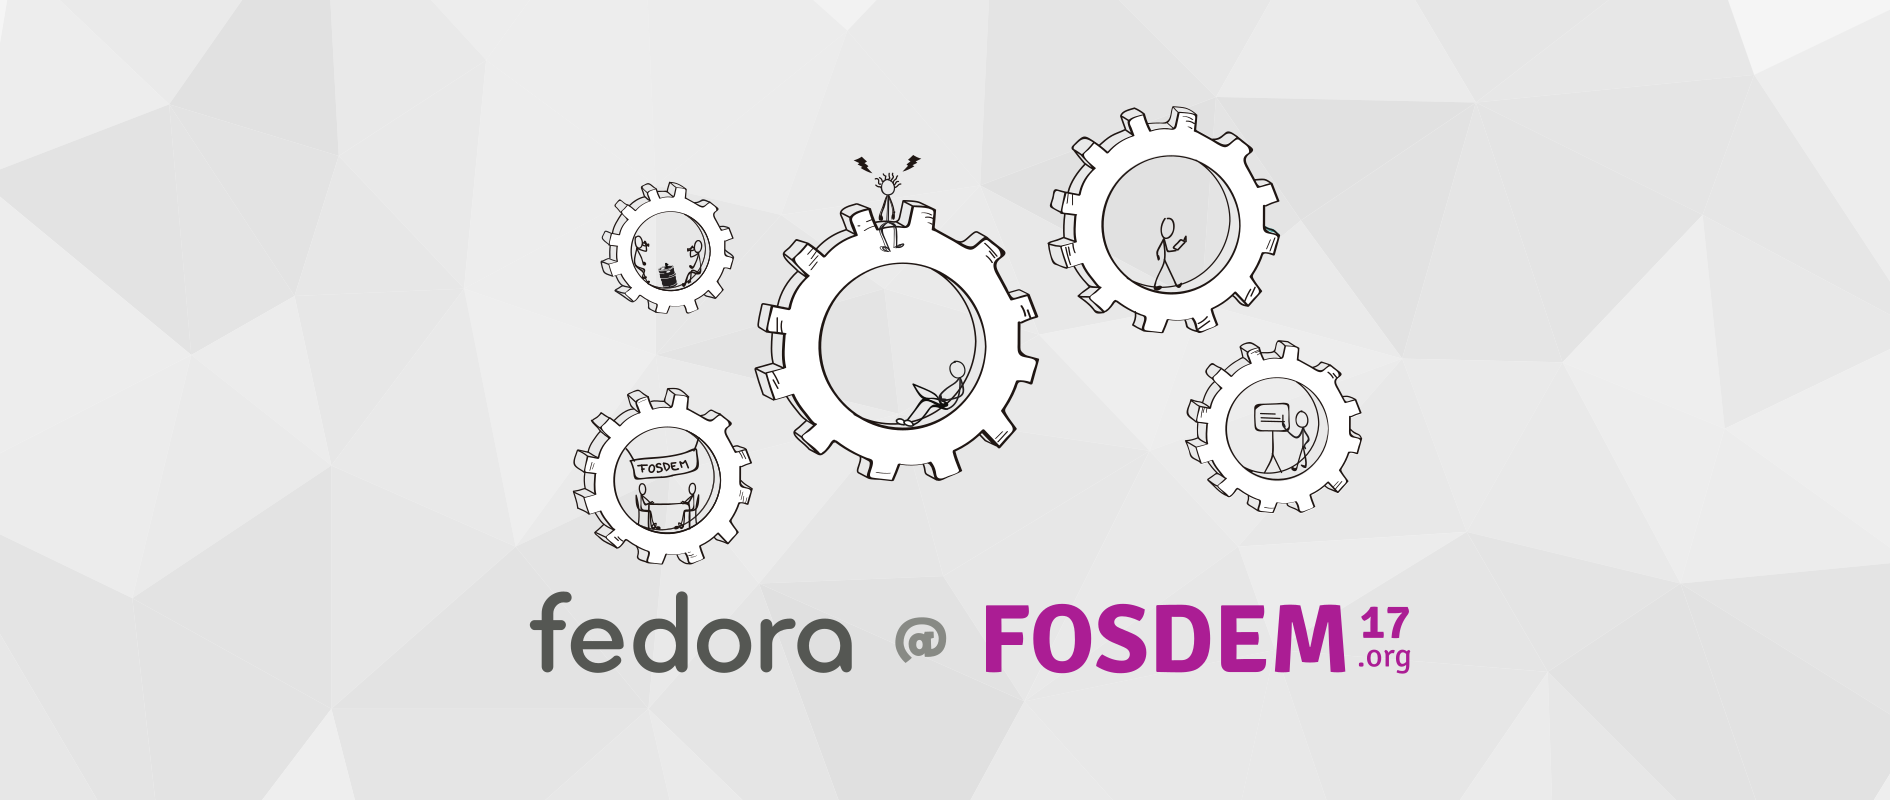 Fedora speakers at FOSDEM 2017